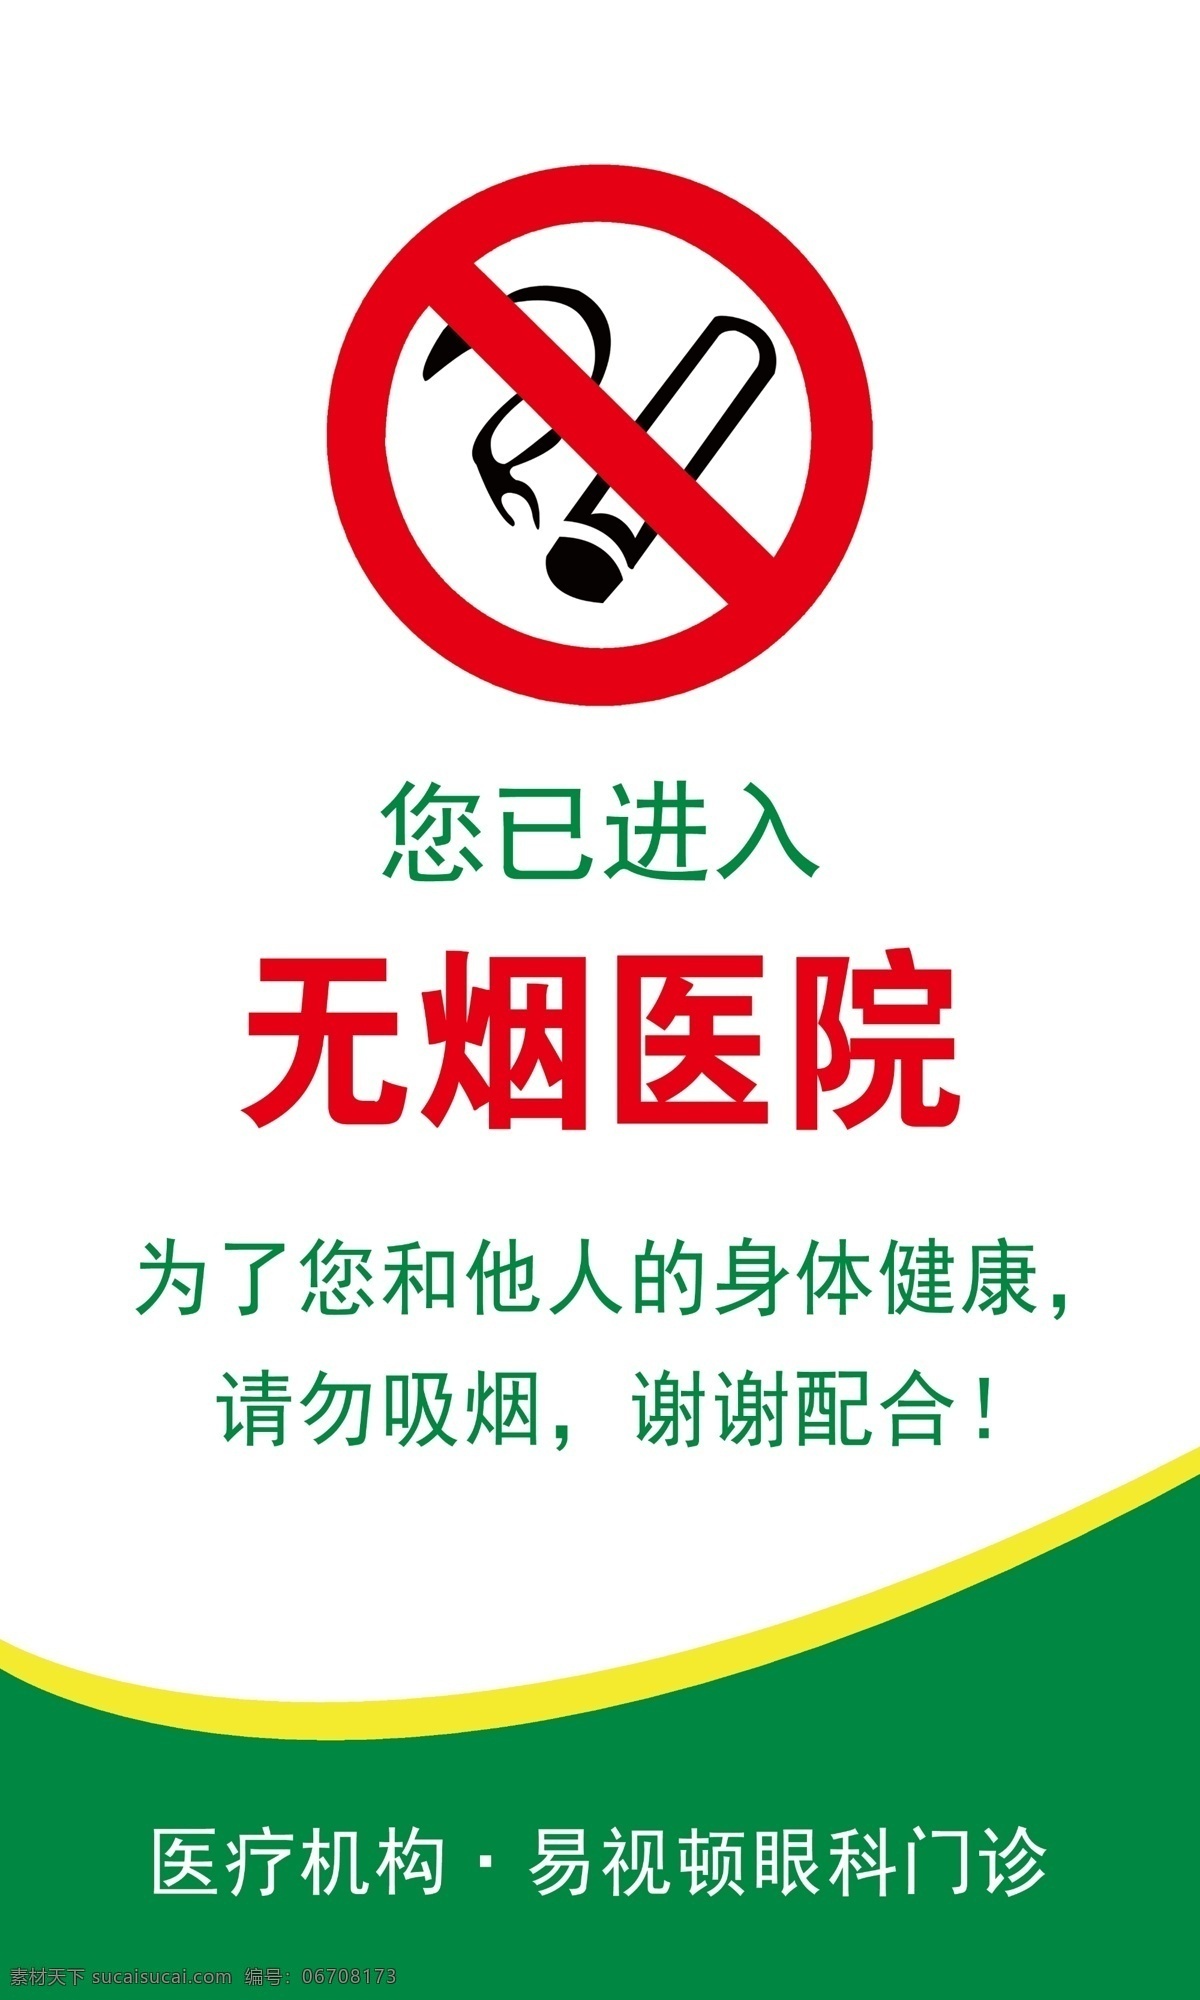 无烟医院 禁止吸烟 哈尔滨展板 禁烟 国家展板 二手烟 举报电话 公共场所 无烟 医院